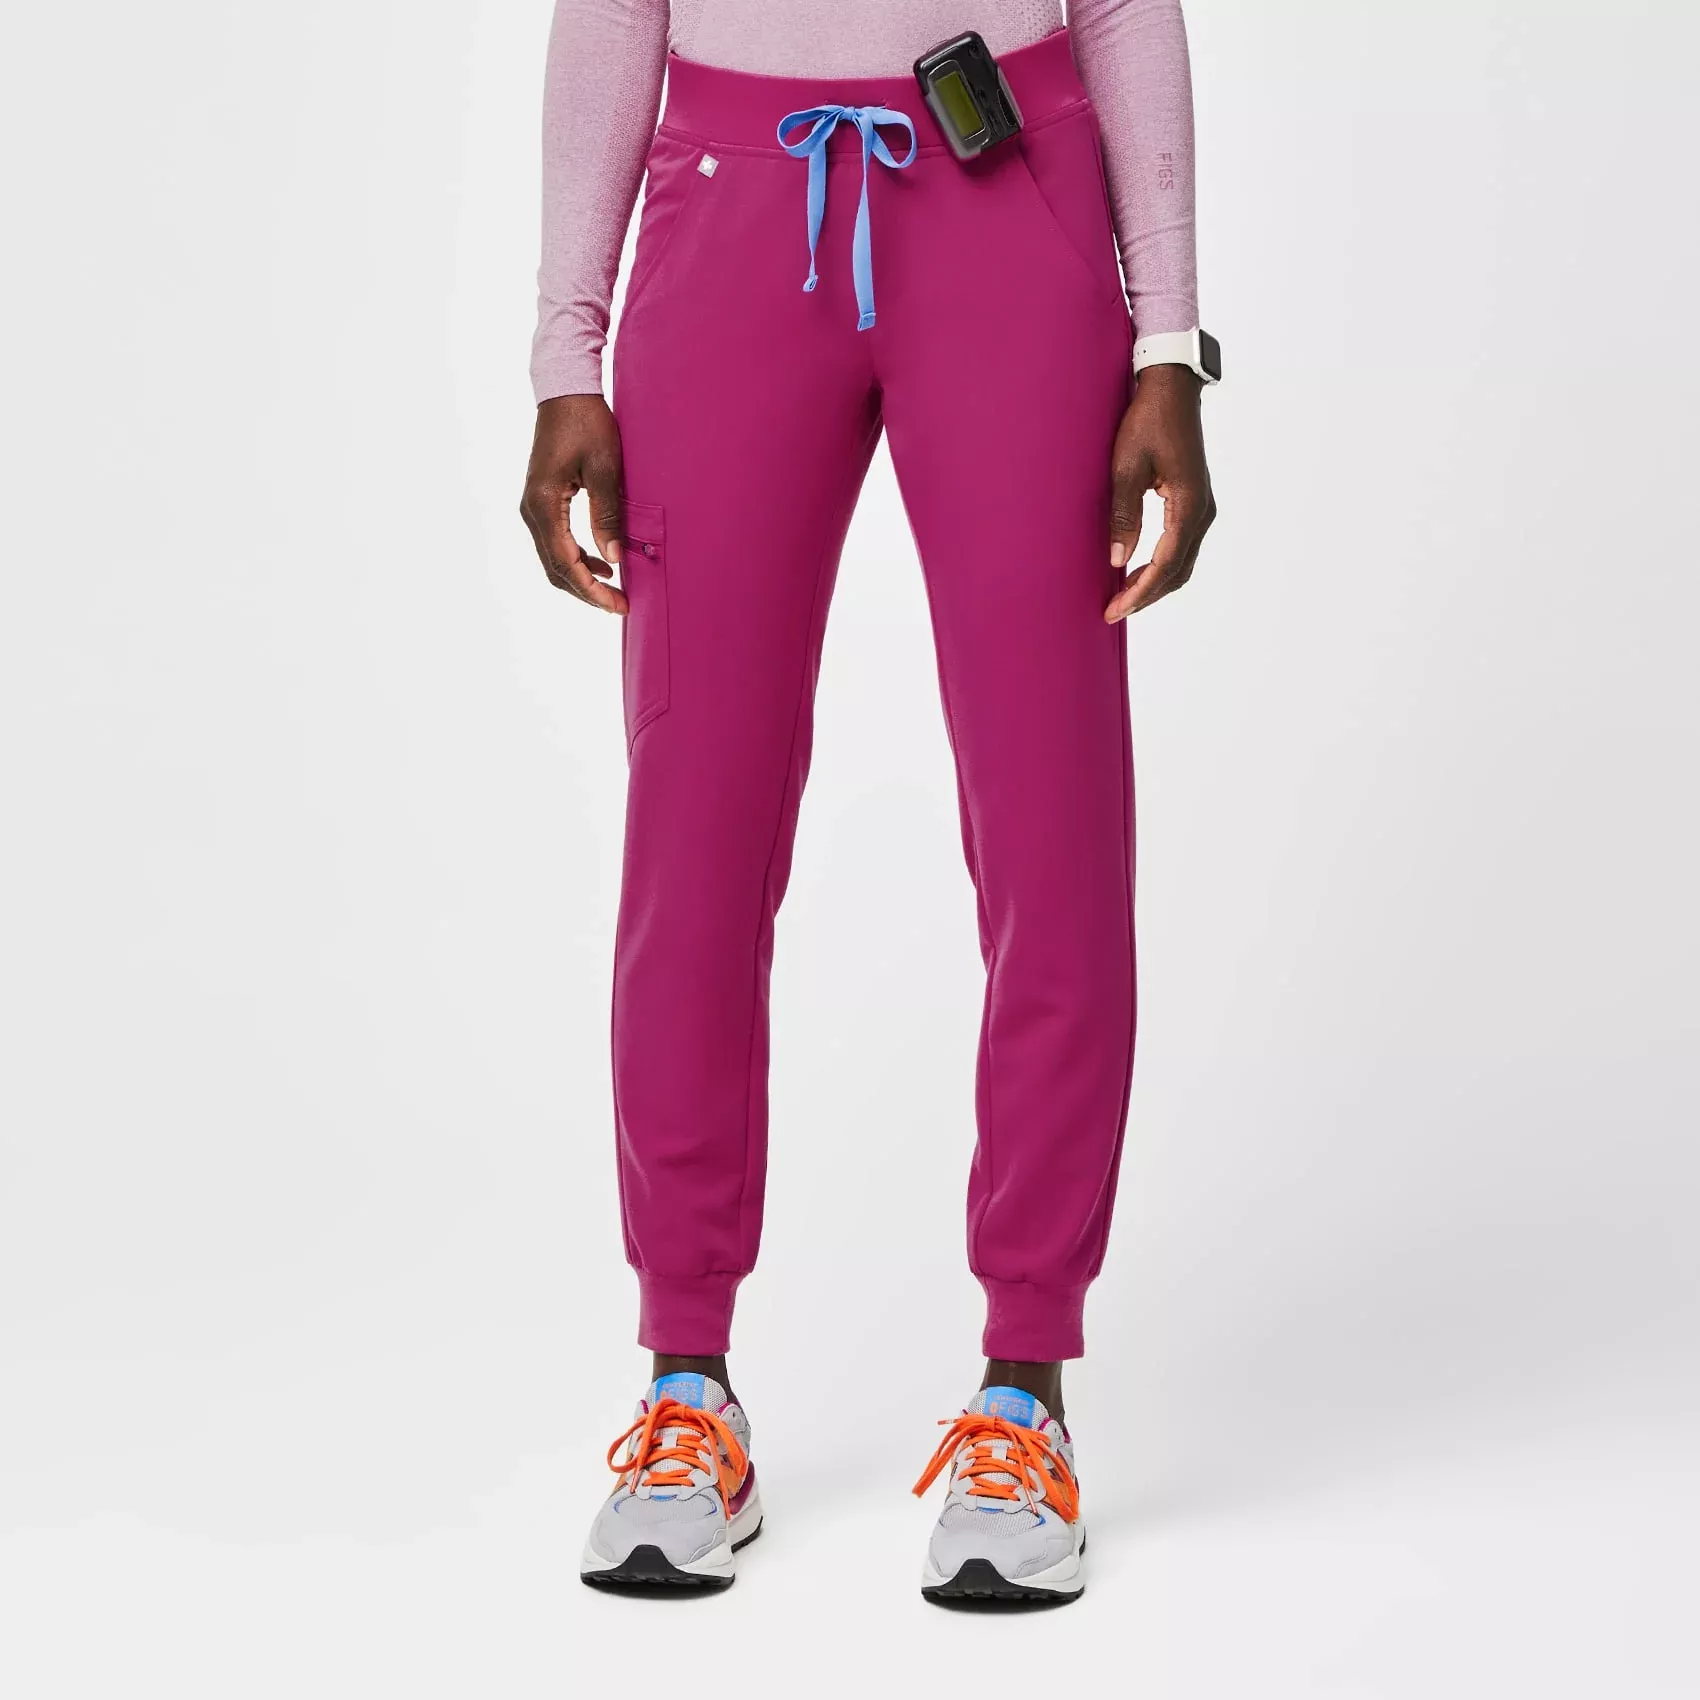 Women's Zamora™ Jogger Scrub Pants - Neon Red · FIGS